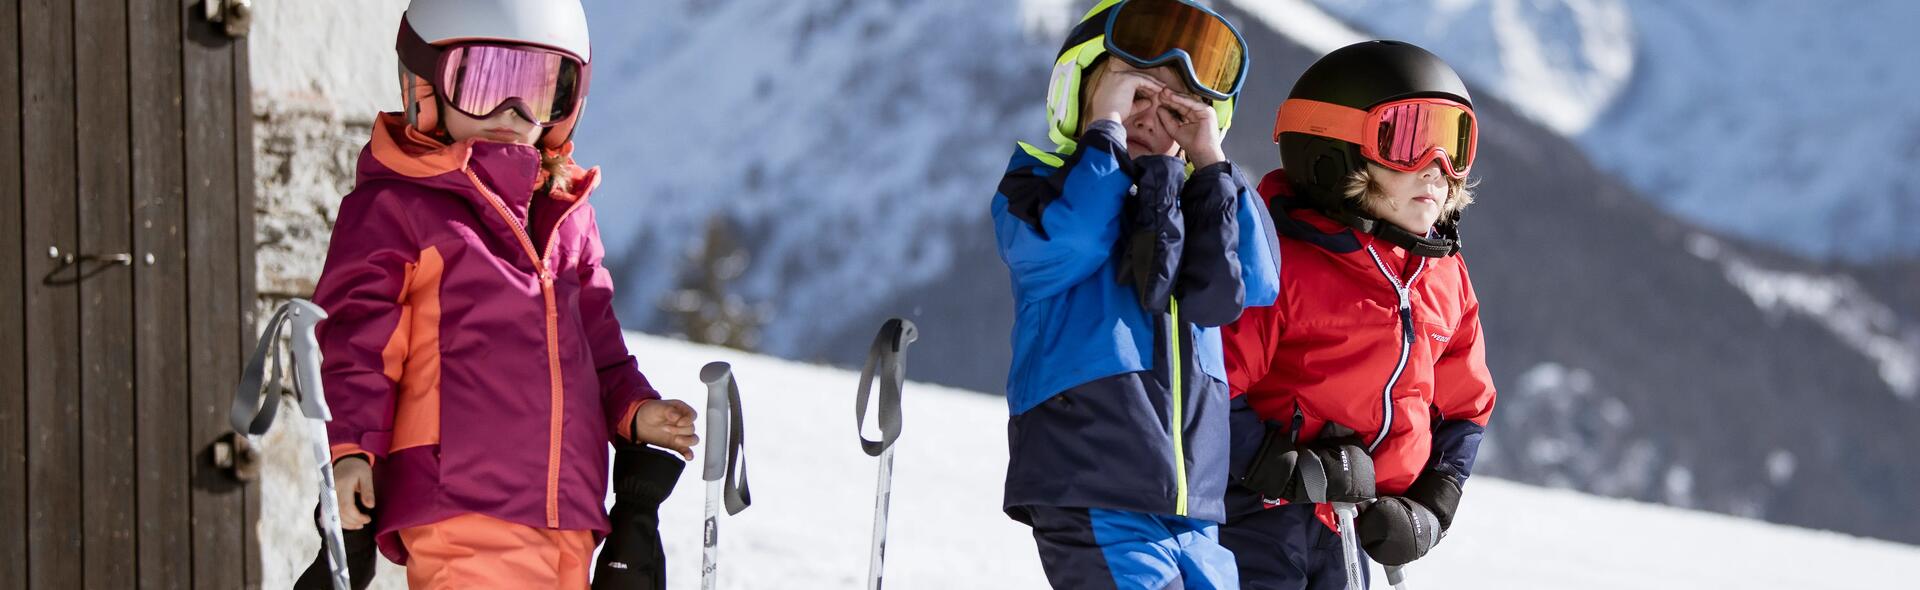 dzieci w strojach narciarskich